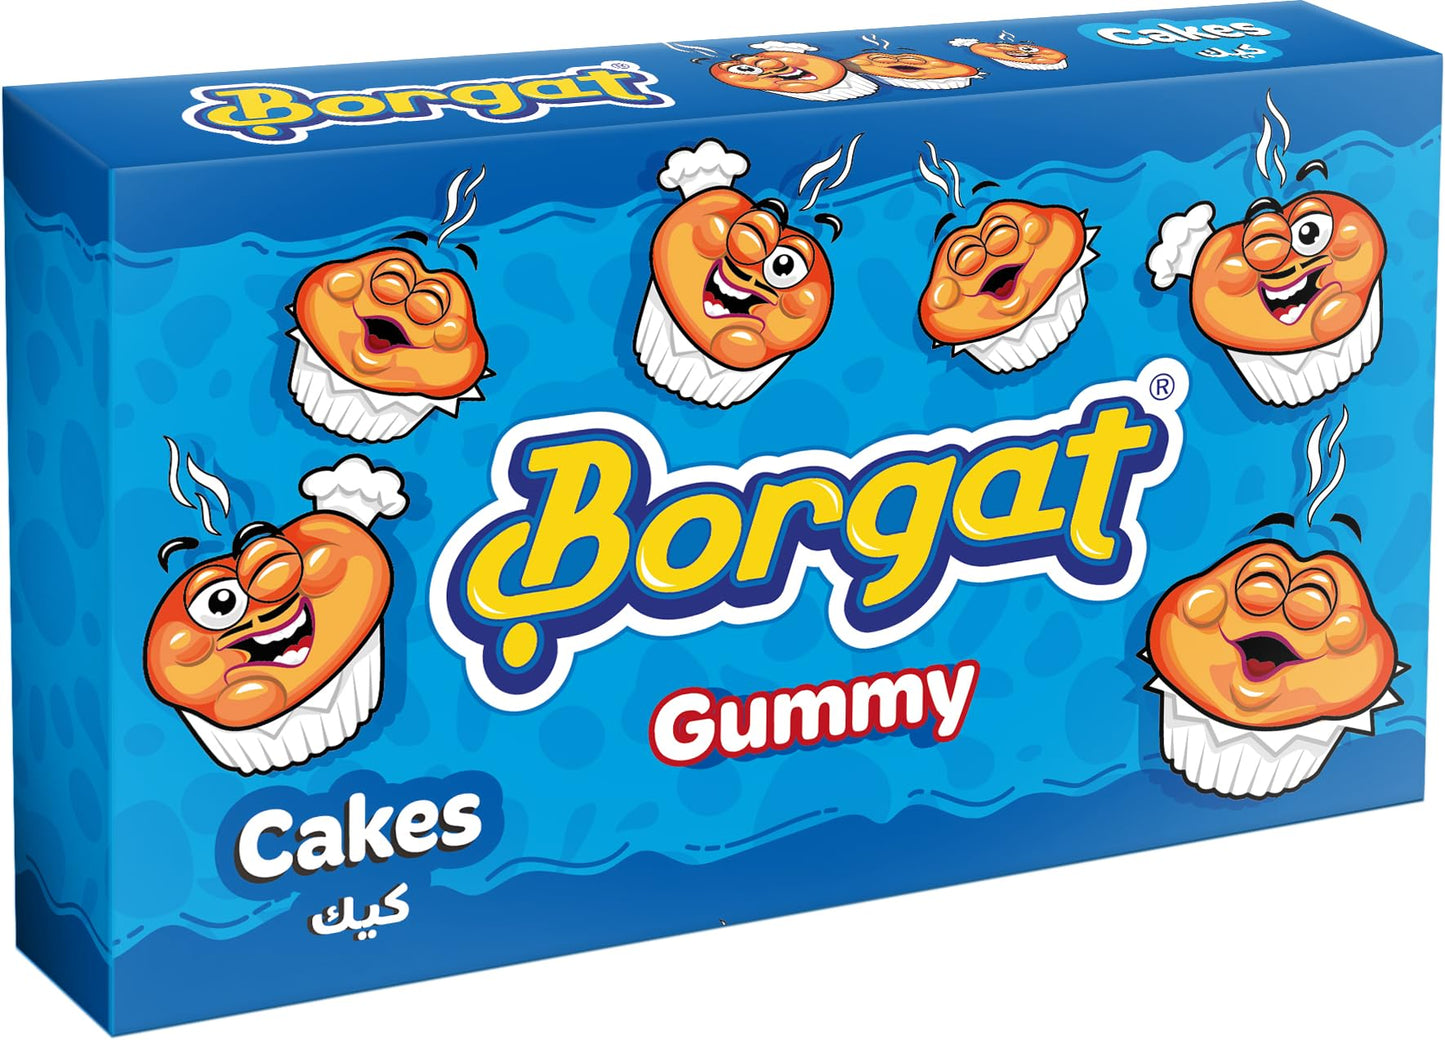 Borgat gummy cake